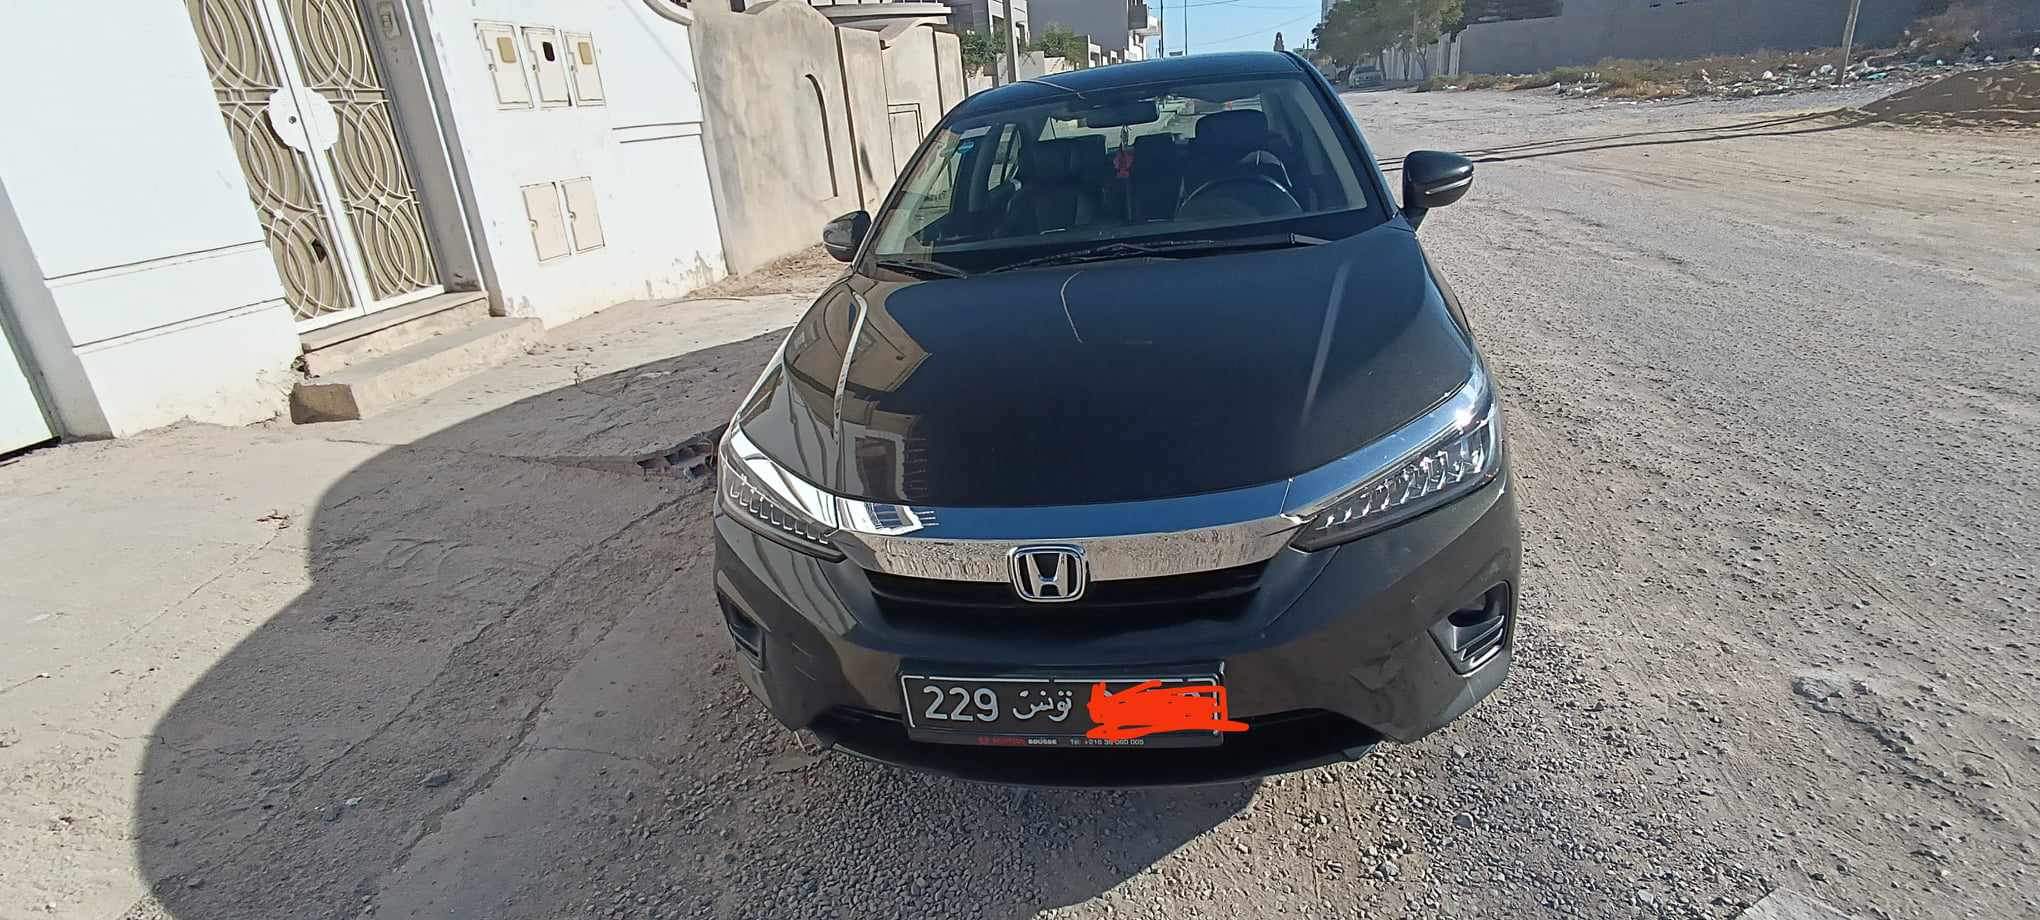 Honda Autre - Tunisie